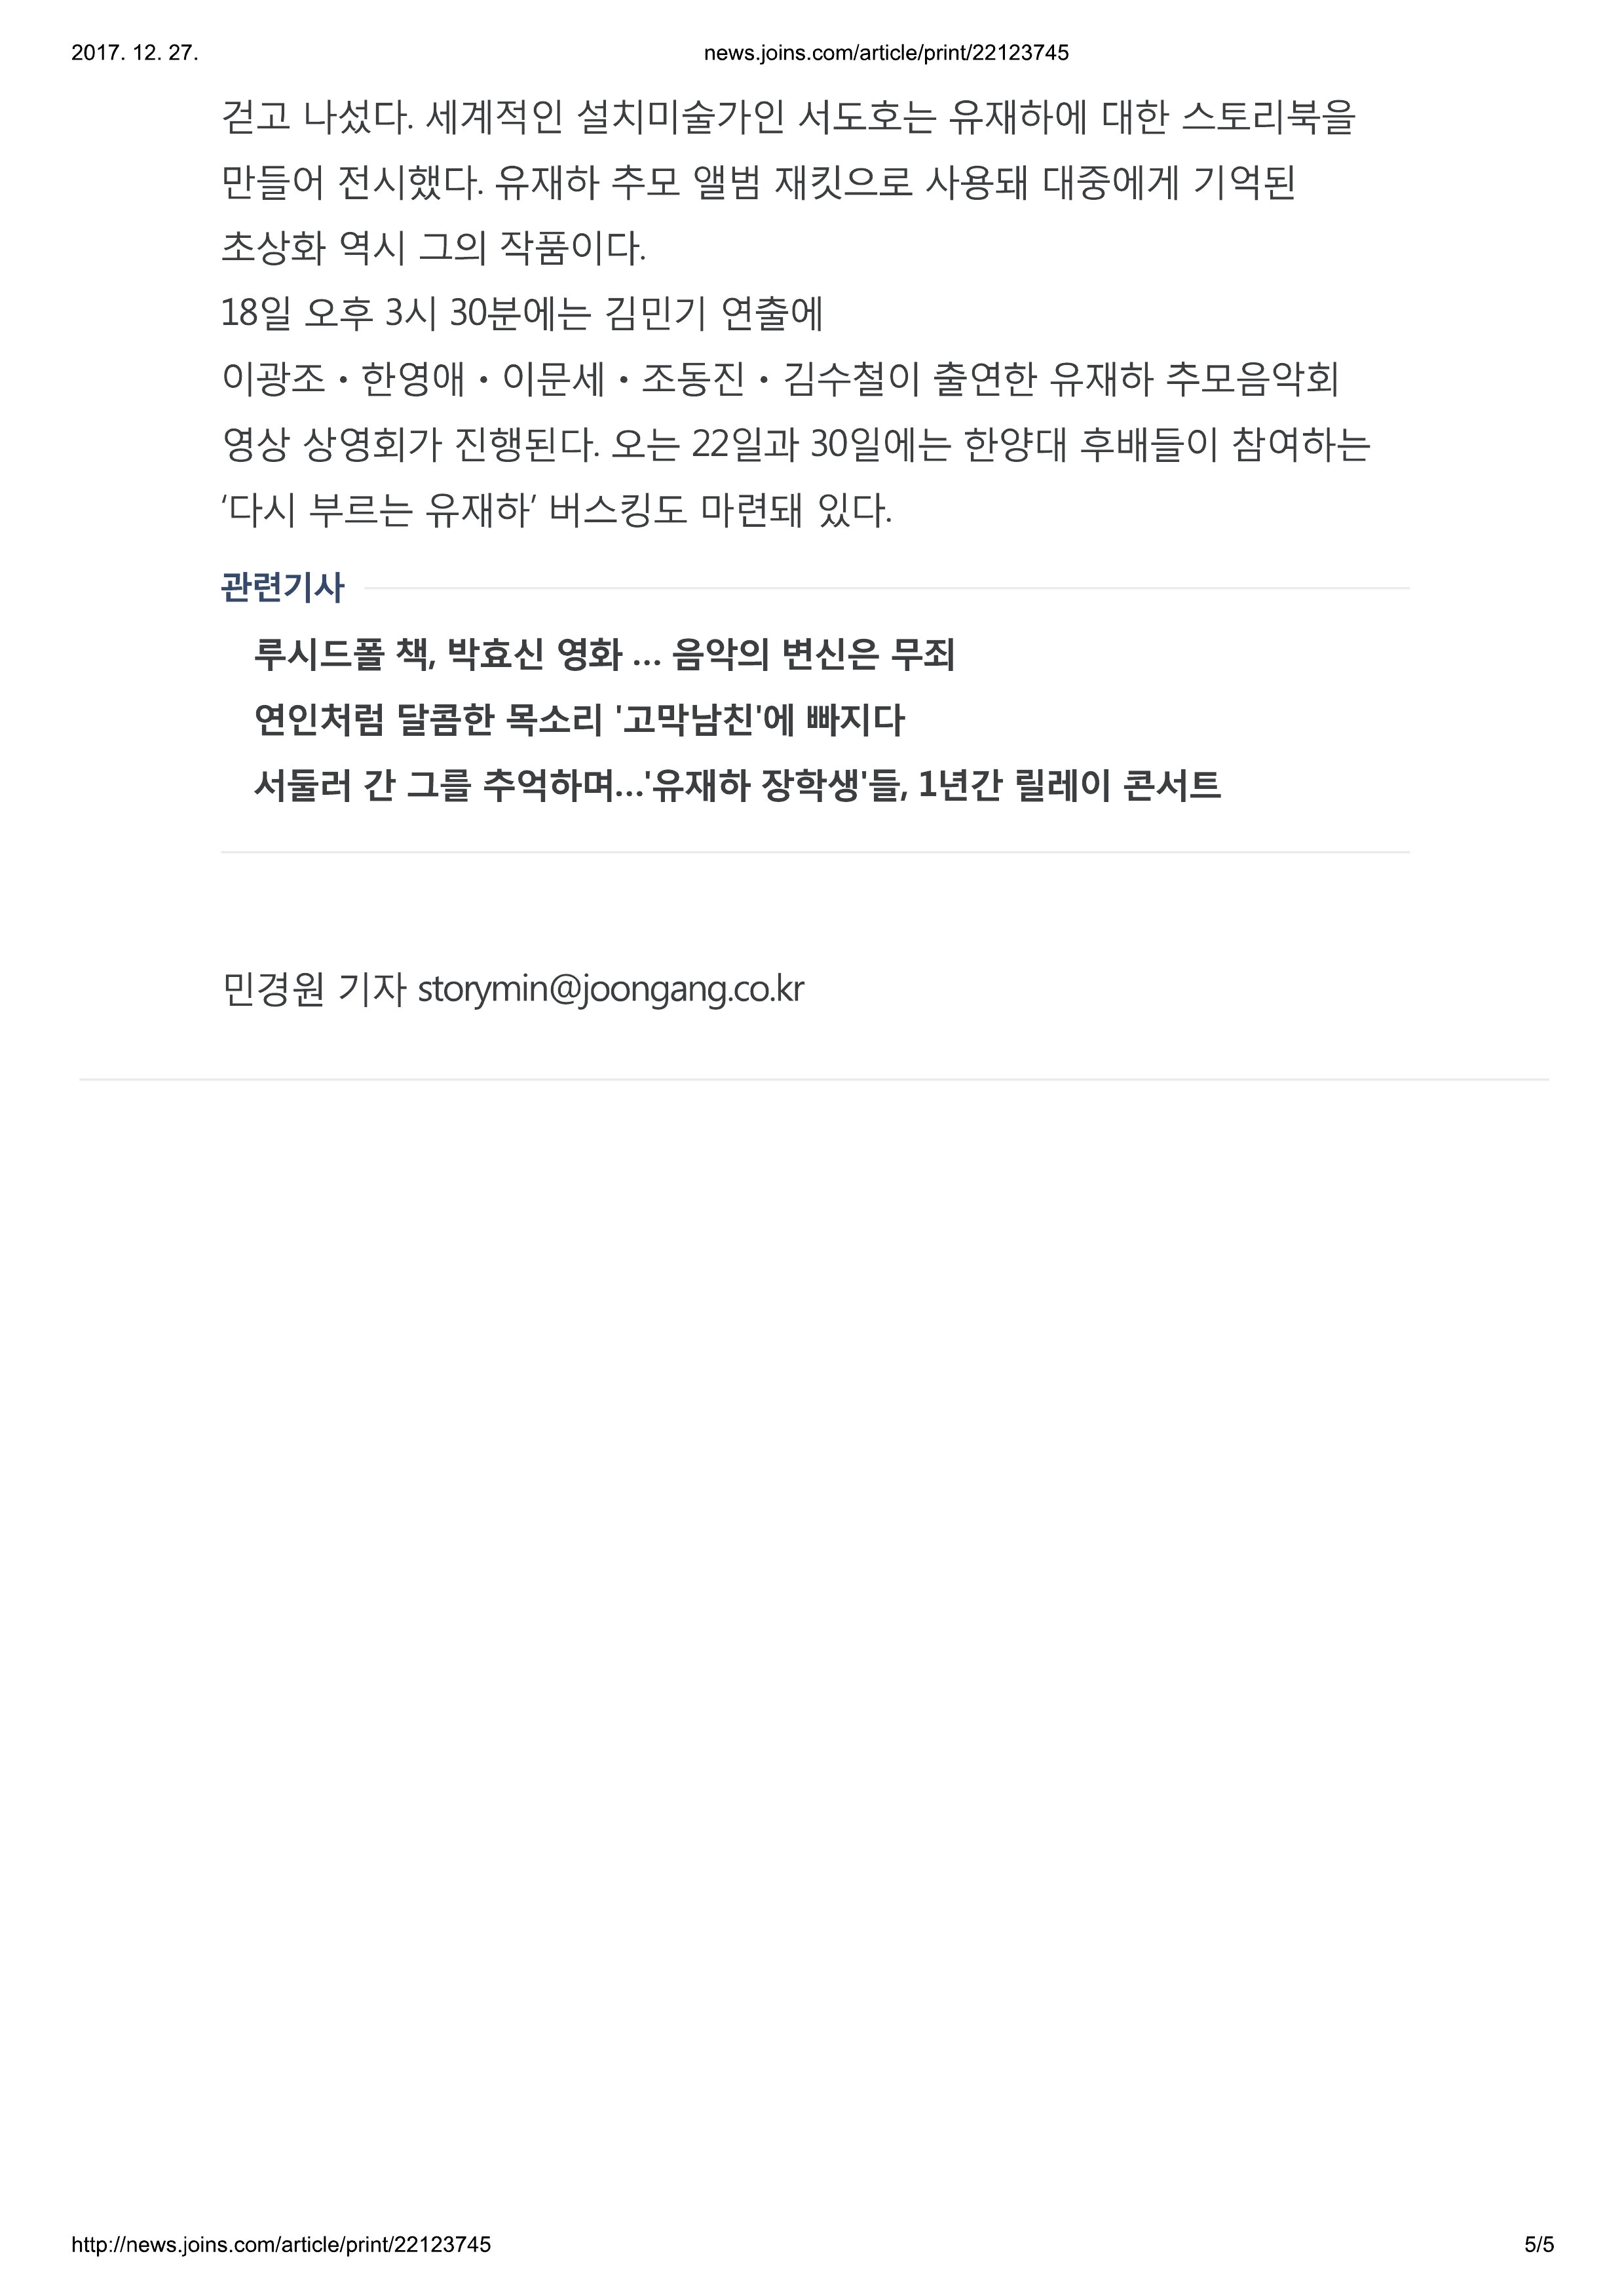 20171117_중앙일보_11월 유재하를 추모하는 방법…보고 듣고 그리고 부른다-5.jpg